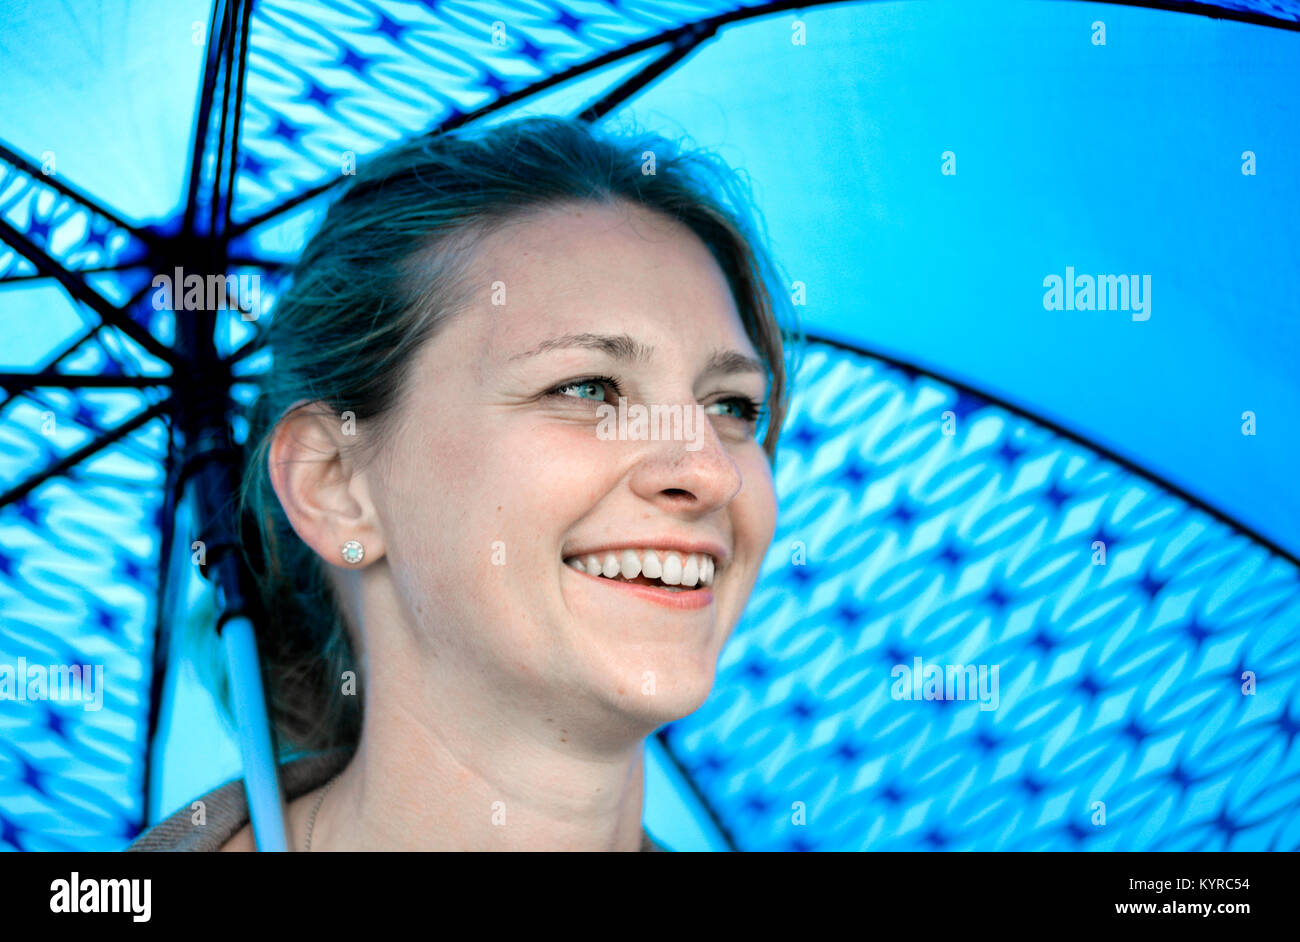 Una chica rubia con ojos azules sonríe bajo un paraguas azul Foto de stock